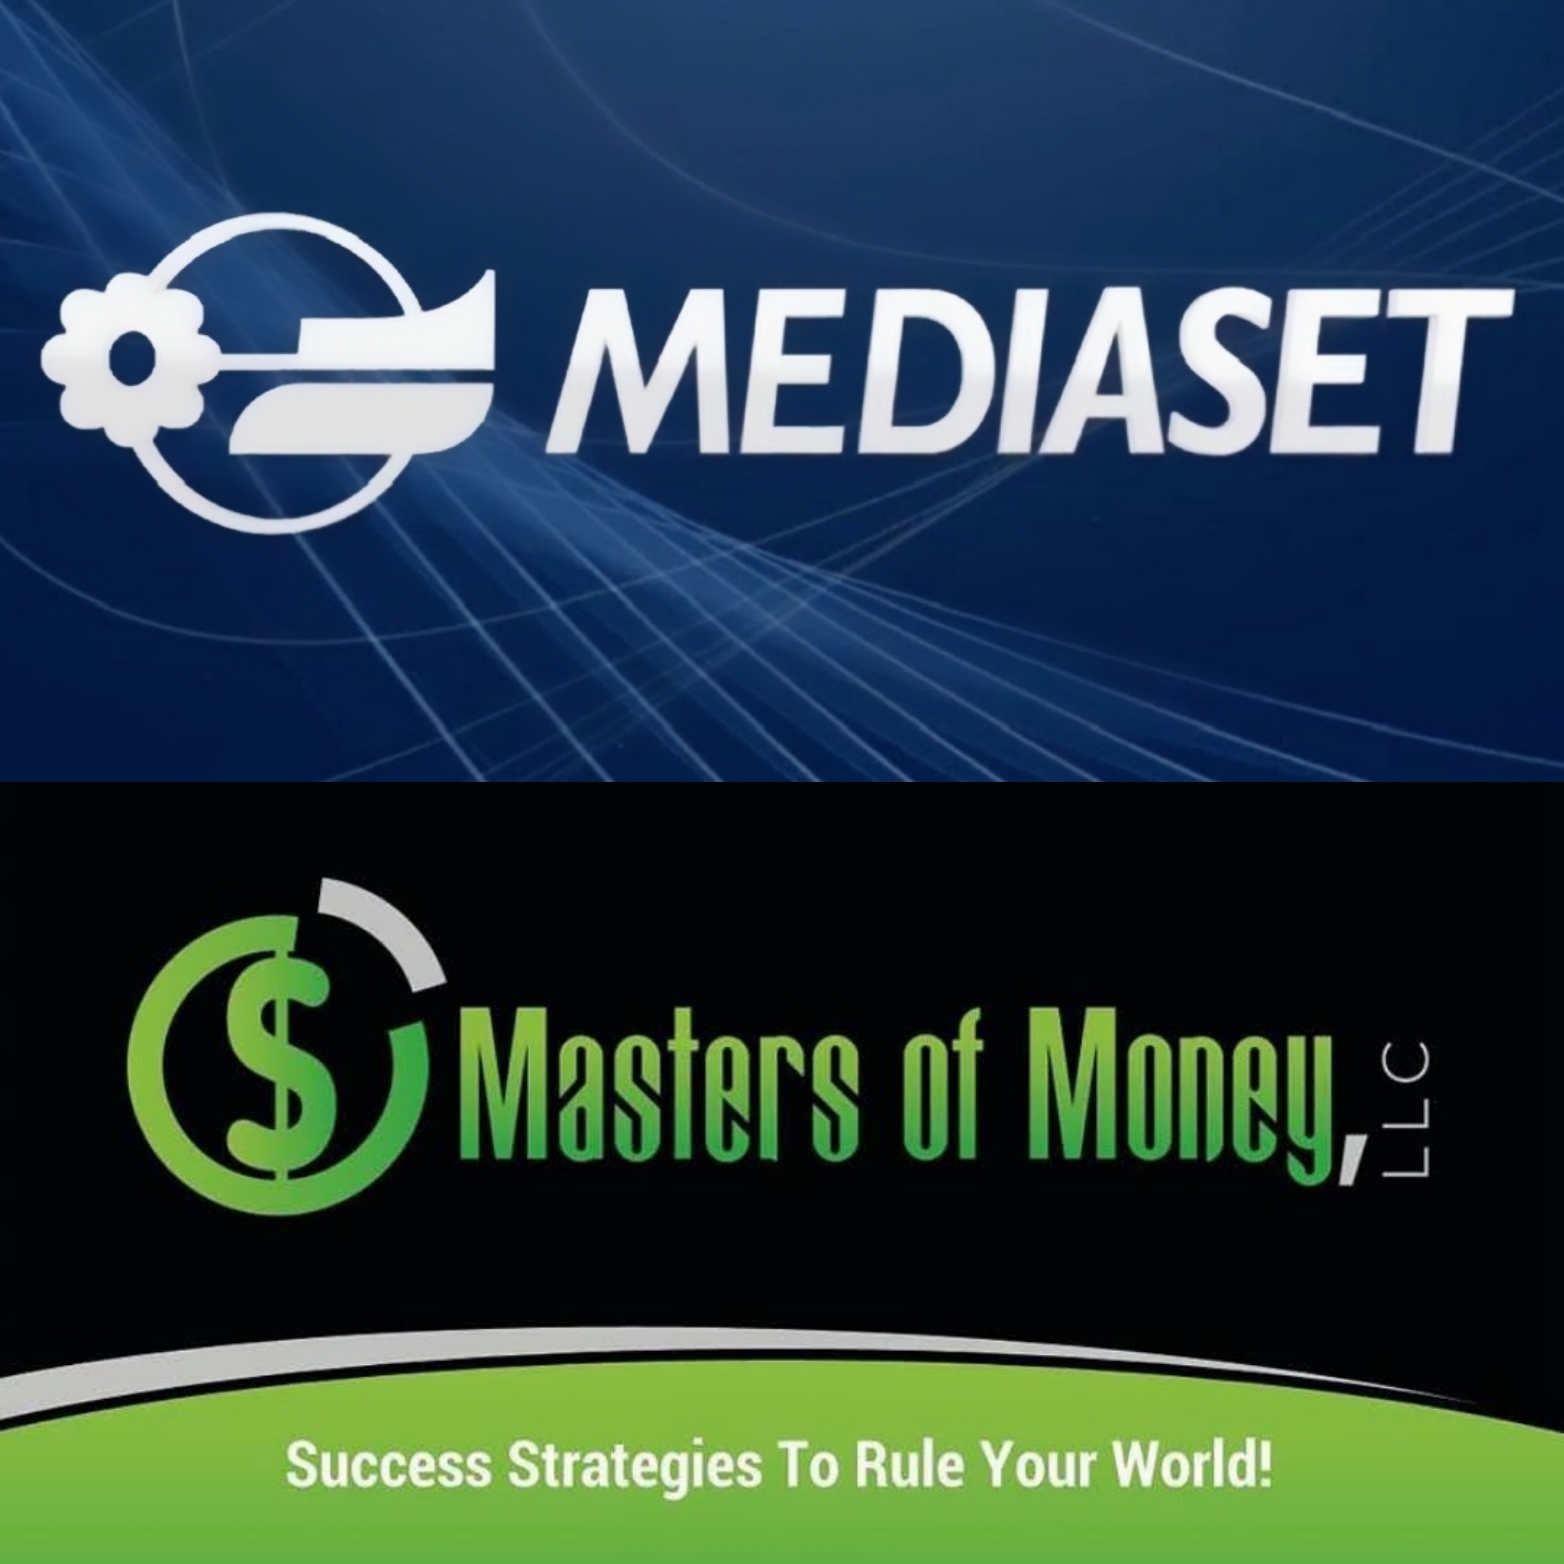 Mediaset Company and Masters of Money LLC Logo Collage